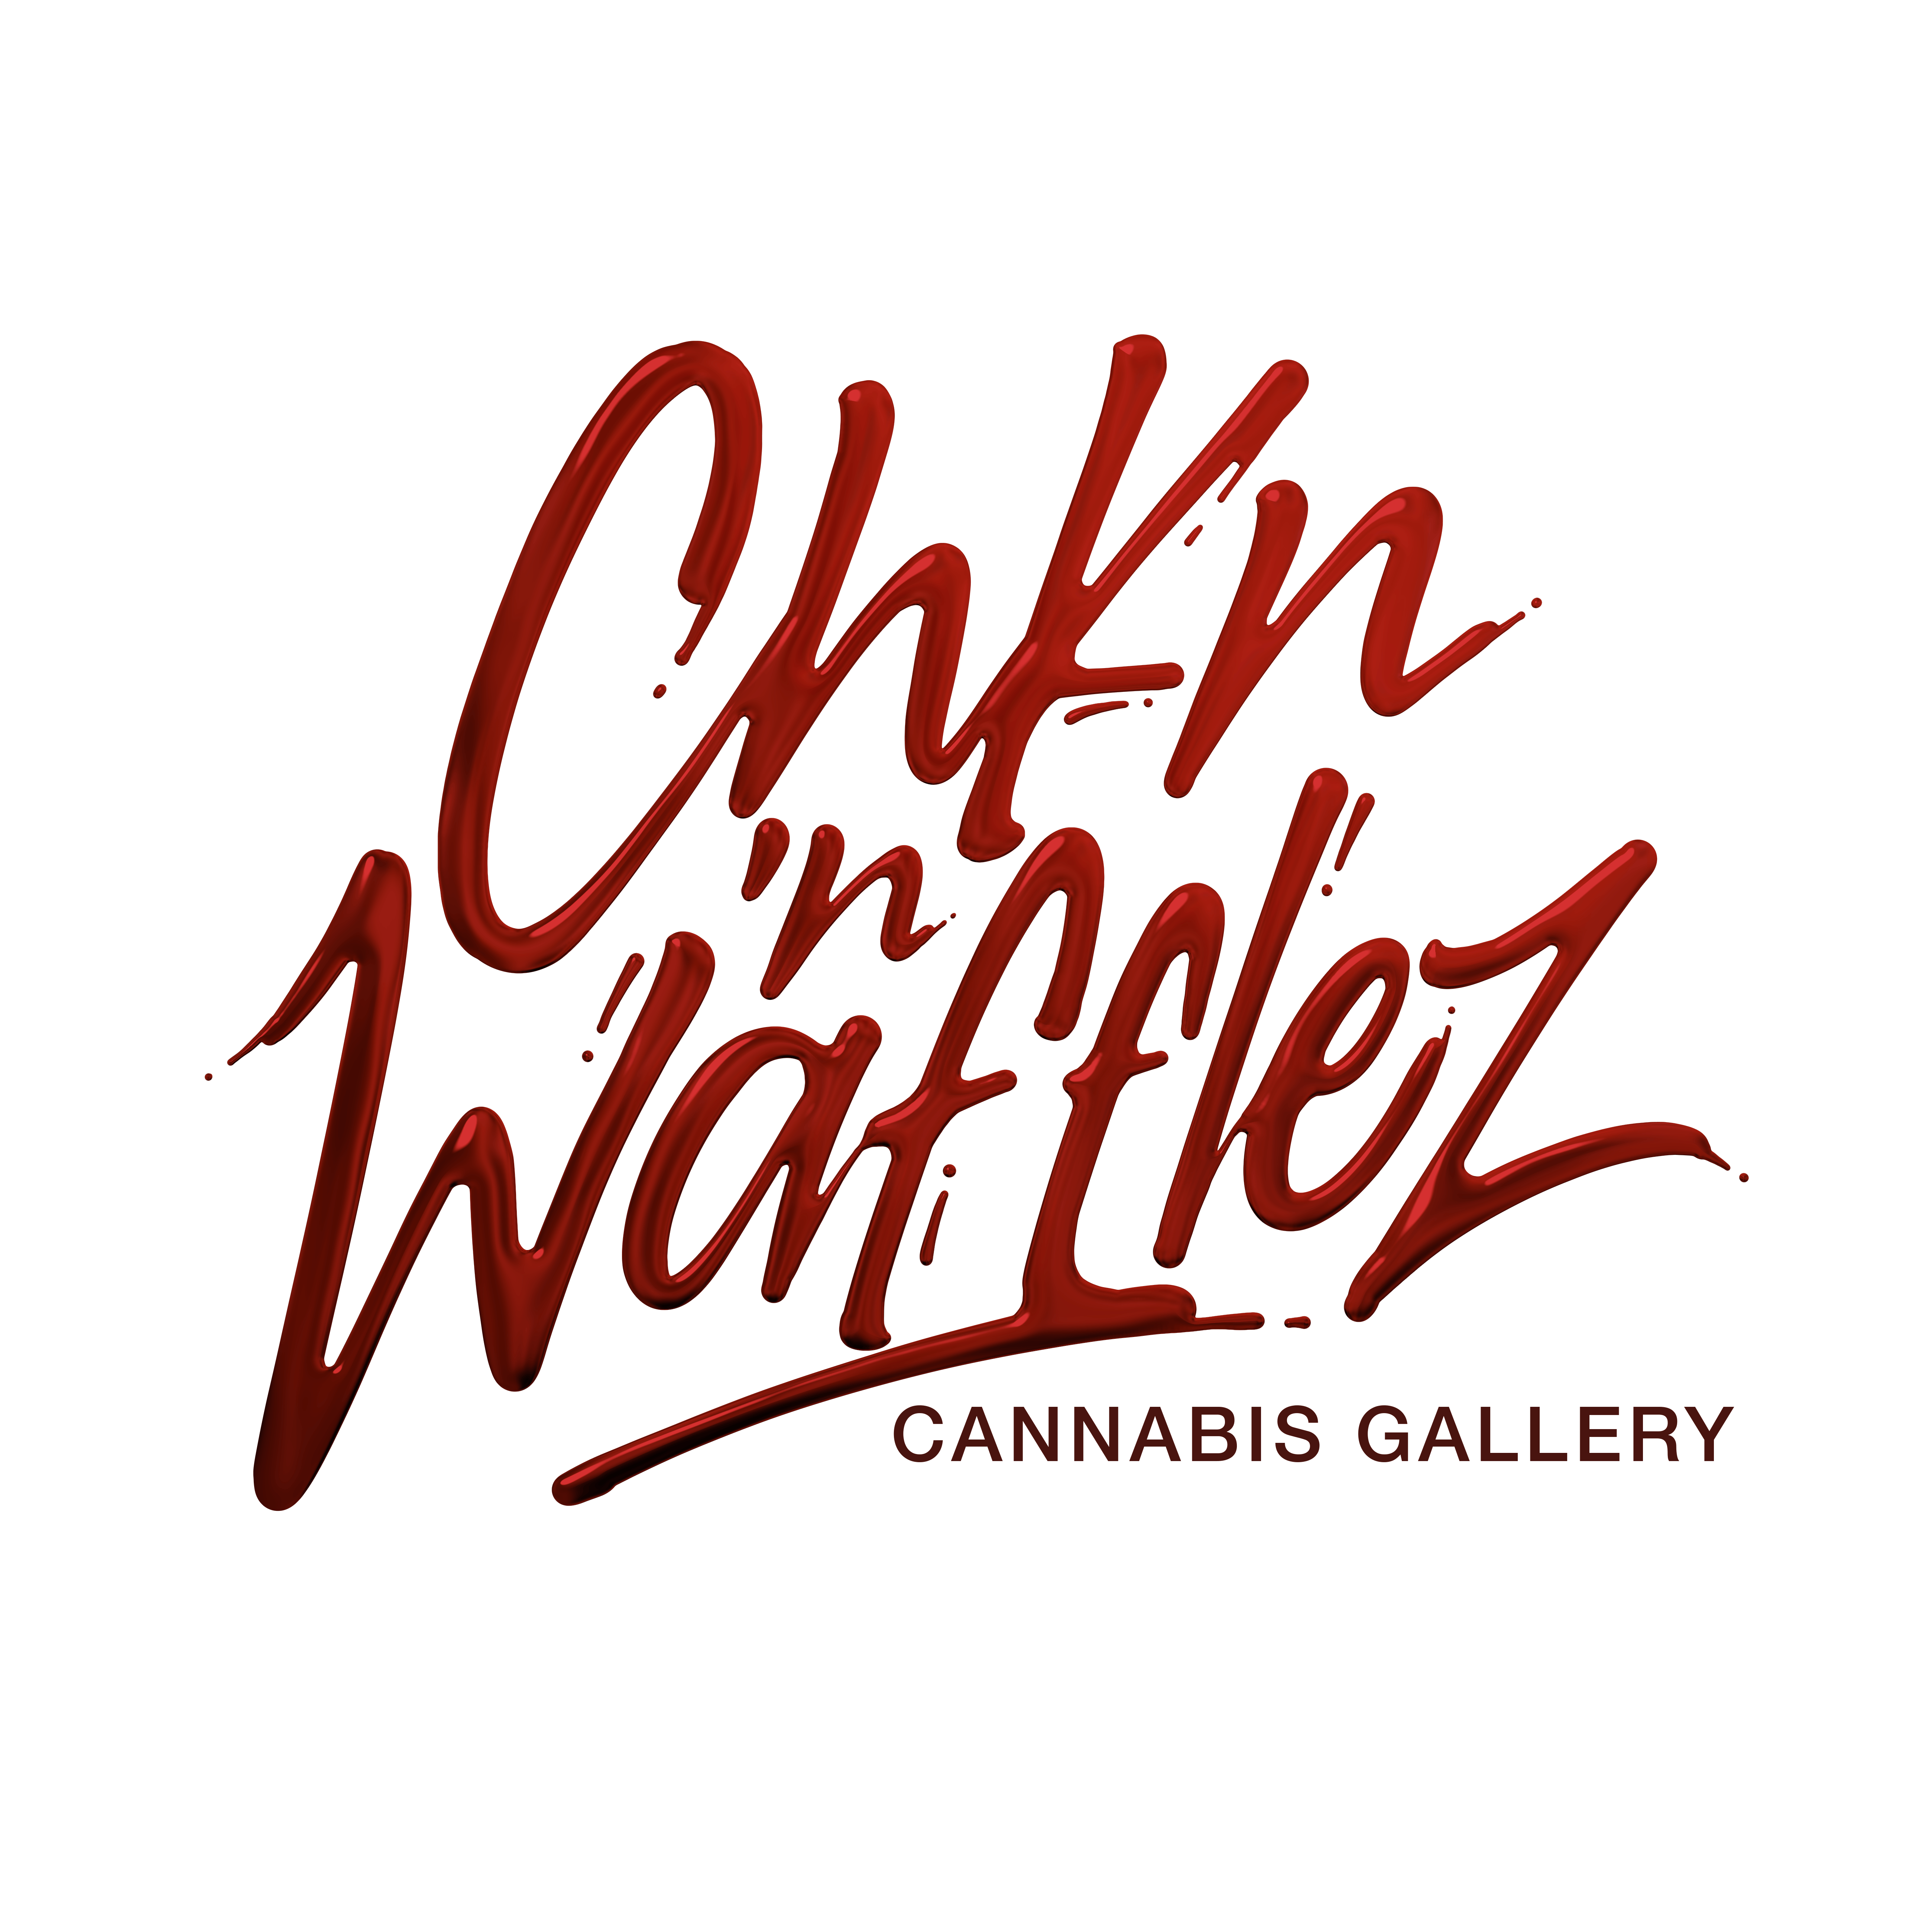 Chkn N Wafflez logo